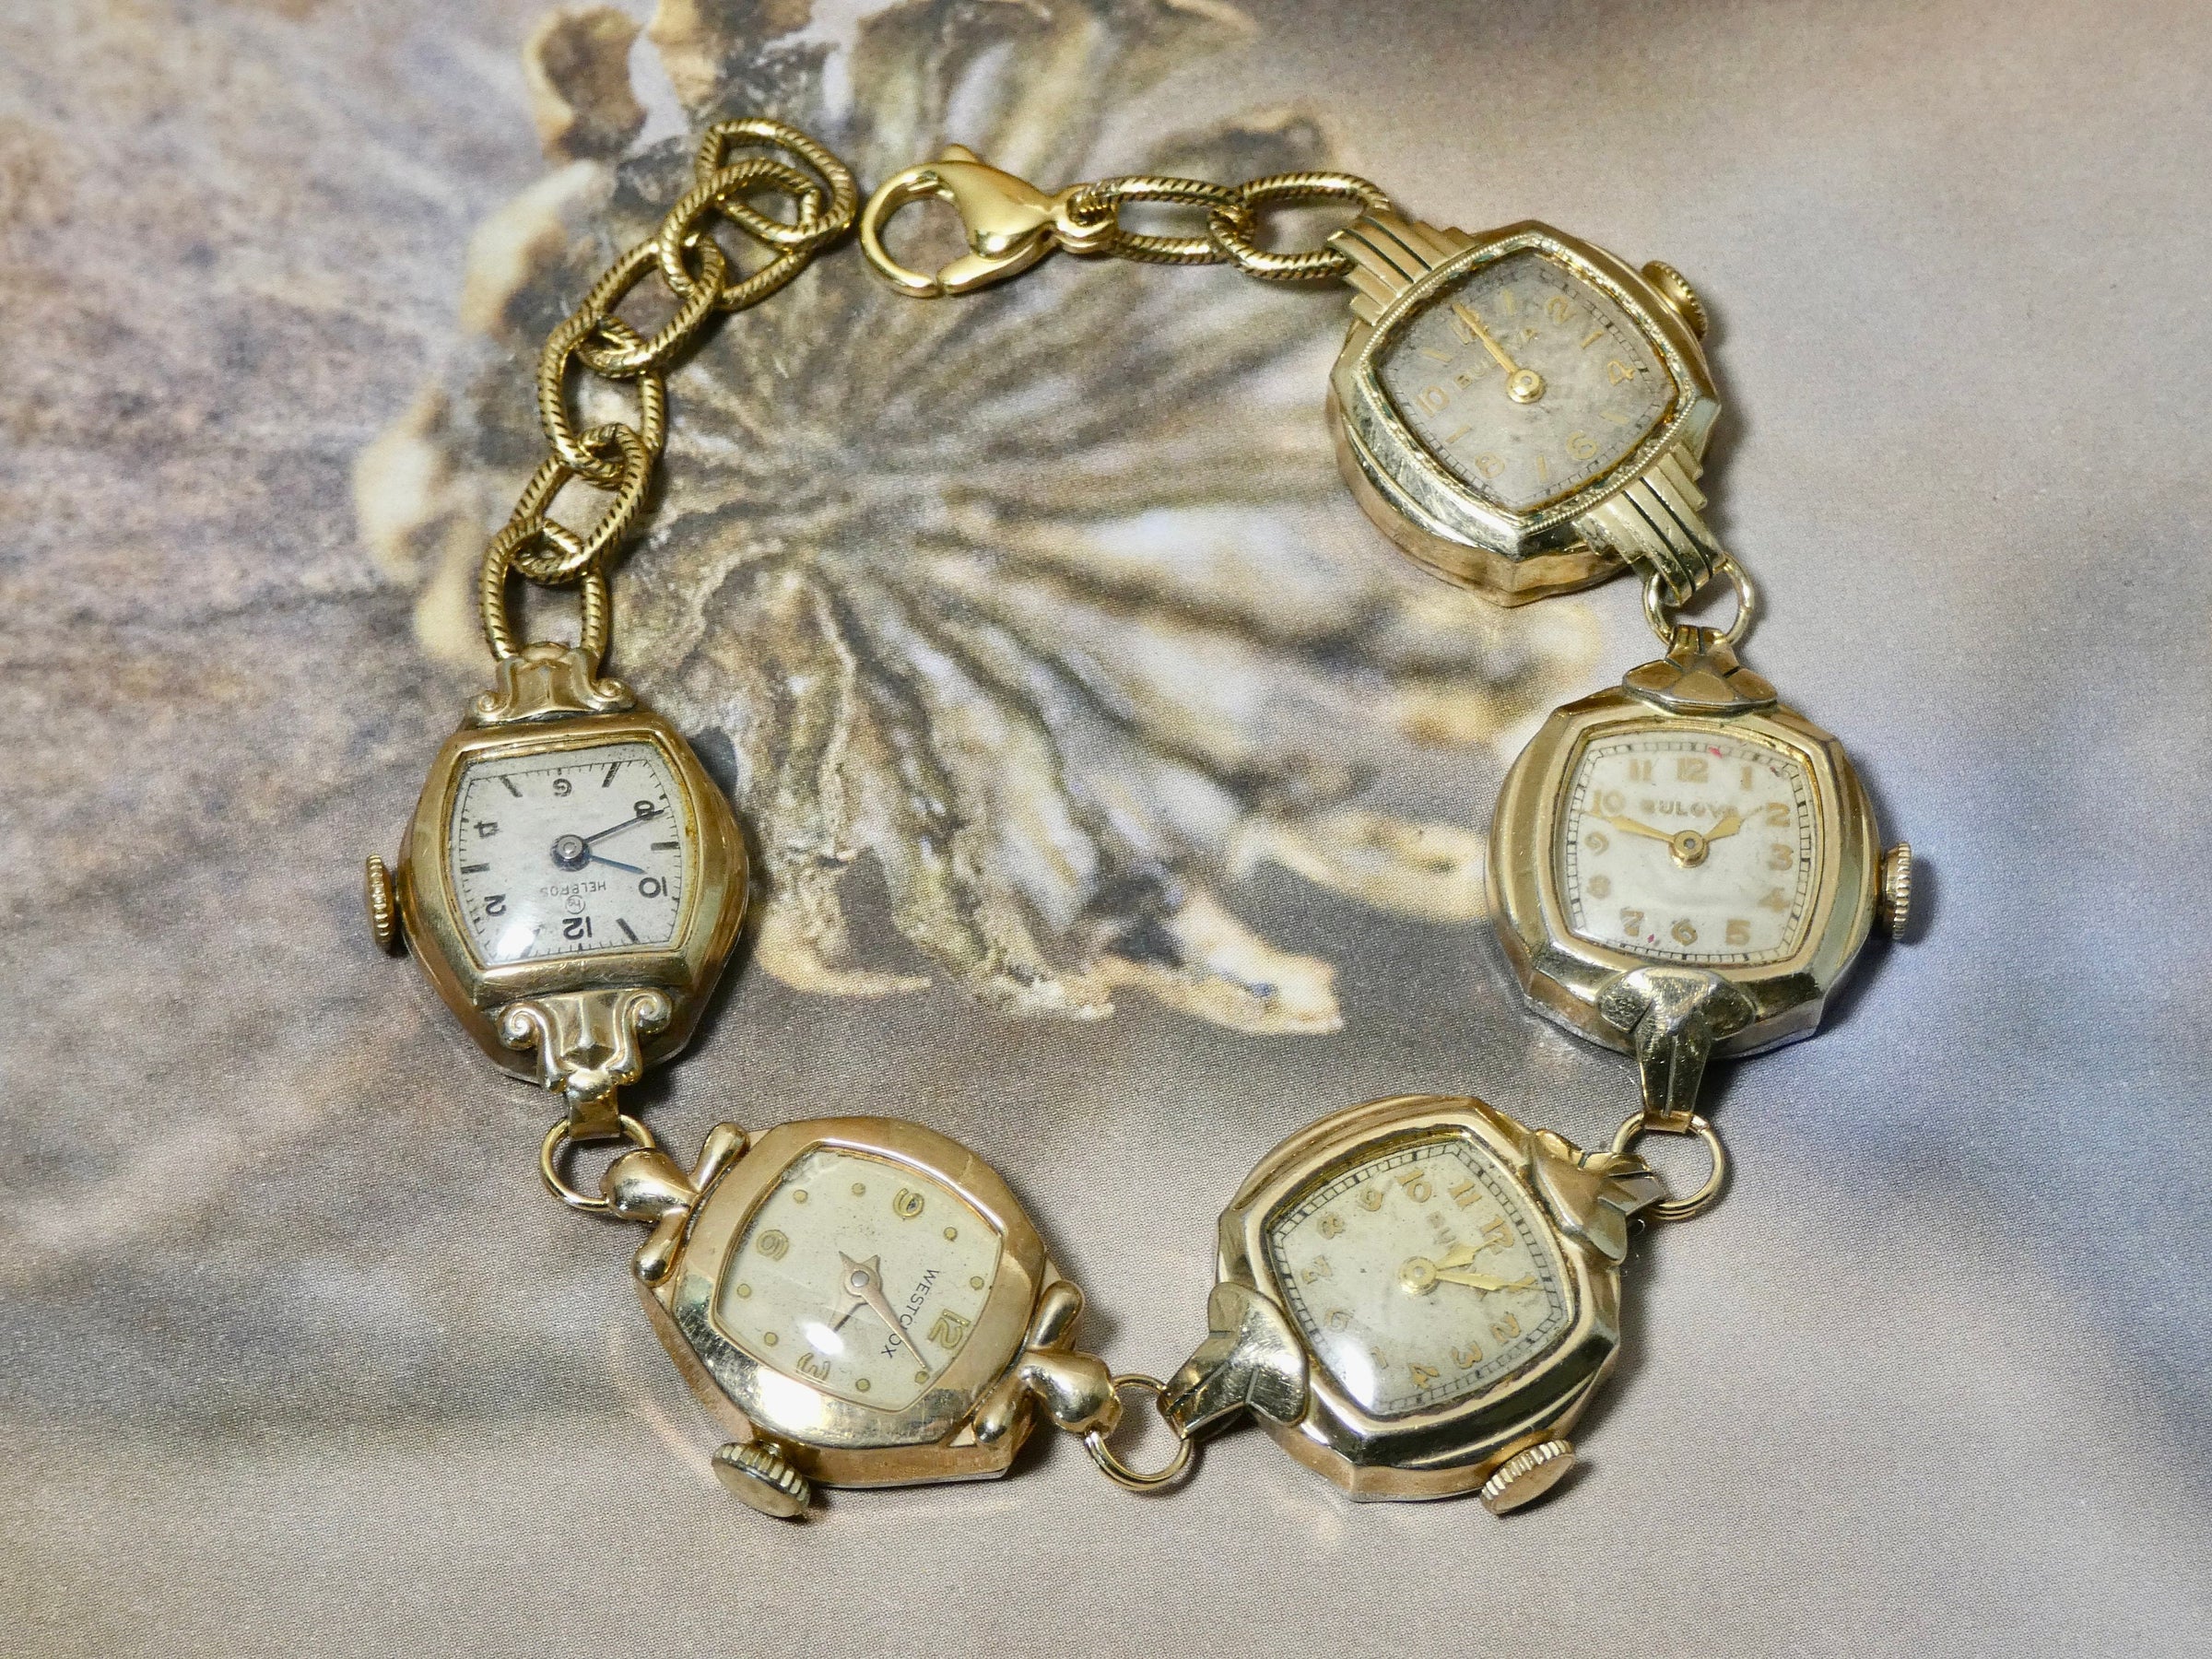 Vintage Watch Bracelet, One of a Kind Bracelet, All Gold plated Watch Bracelet- IBB